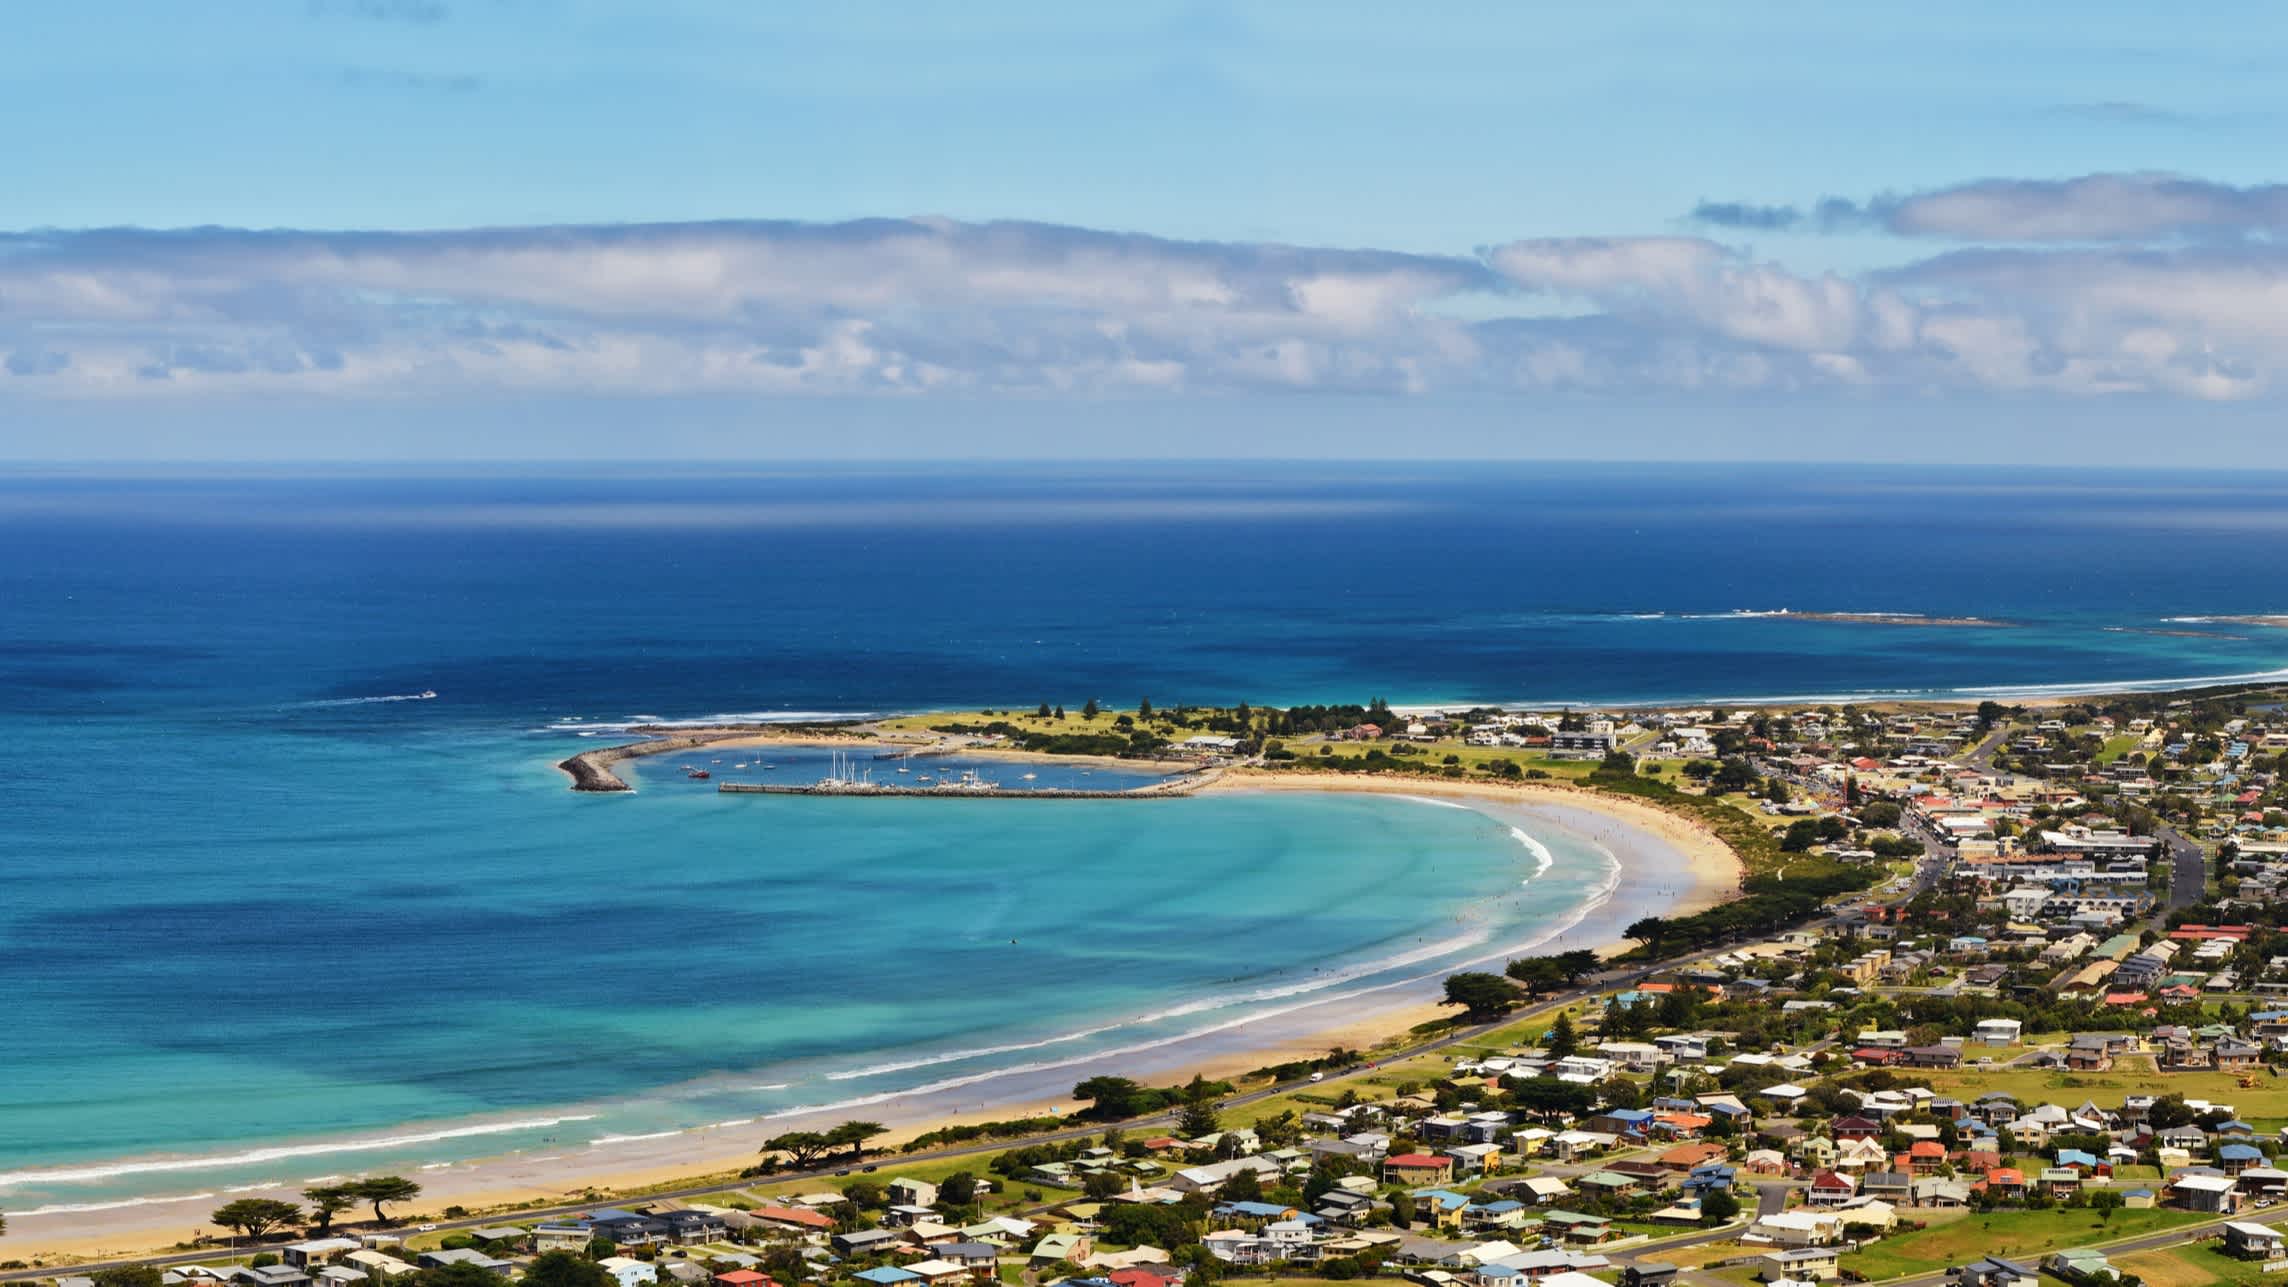 Blick auf die Apollo Bay an der australischen Pazifikküste.